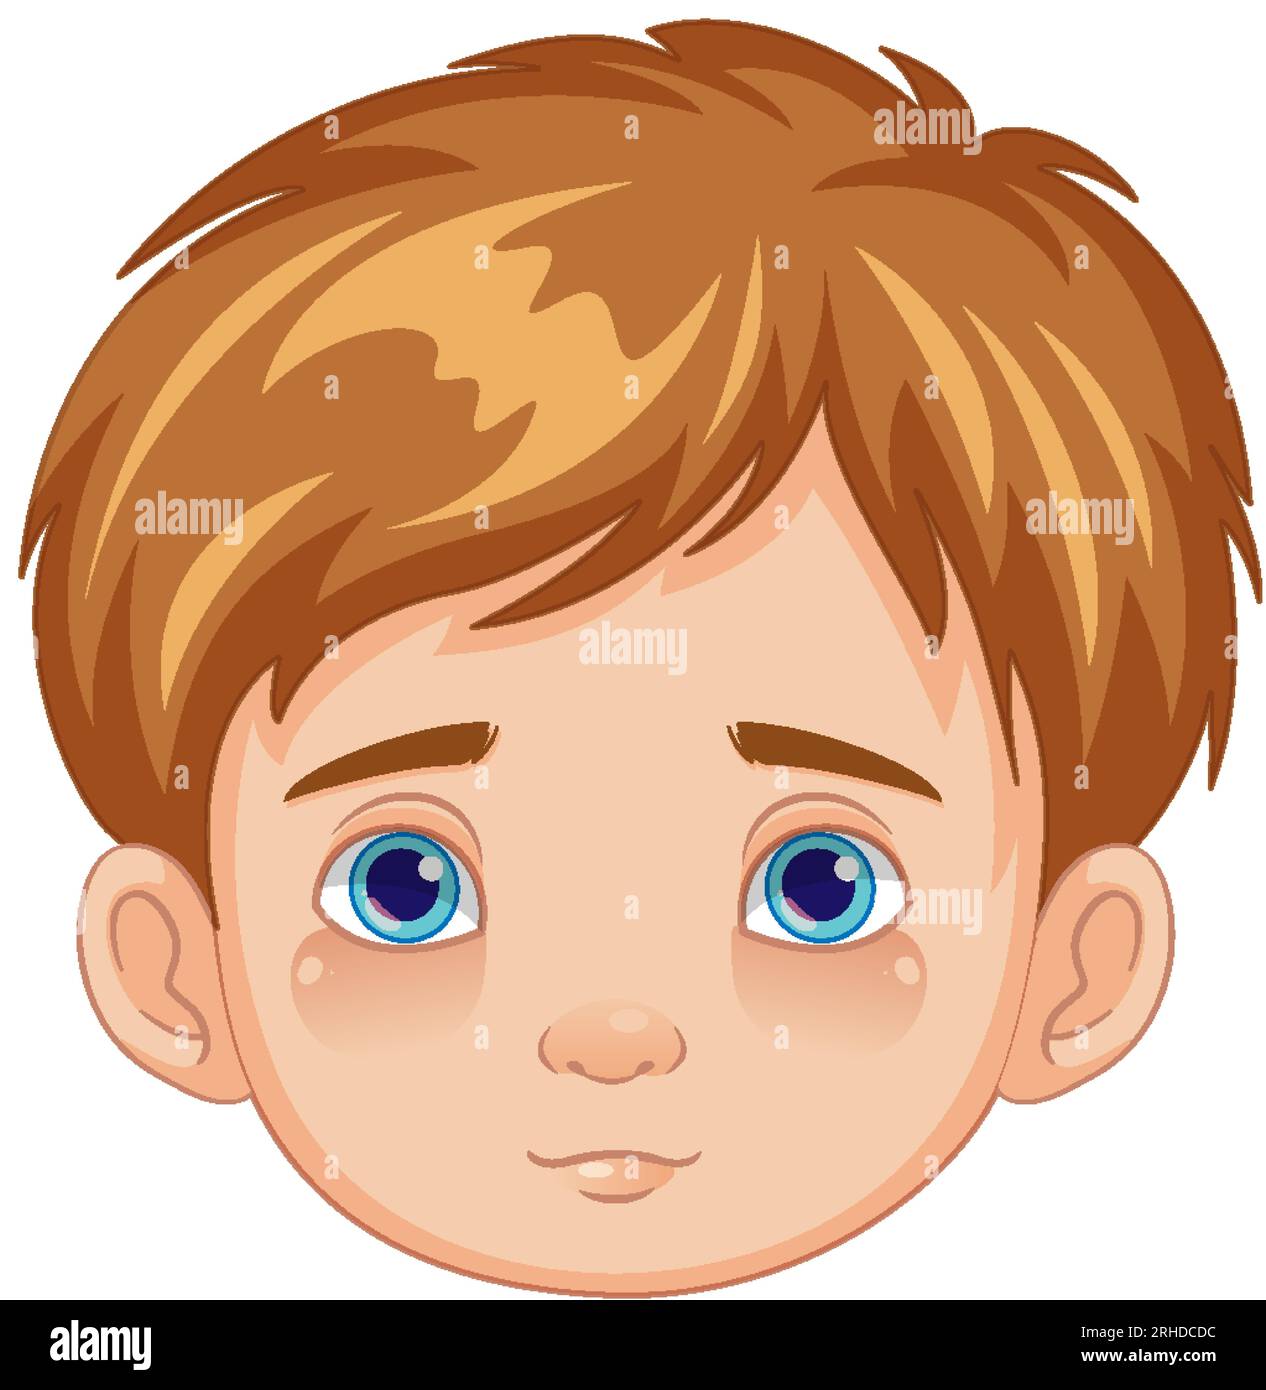 Darstellung eines jungen Jungen mit neutralem Gesichtsausdruck im Vektorstil Stock Vektor